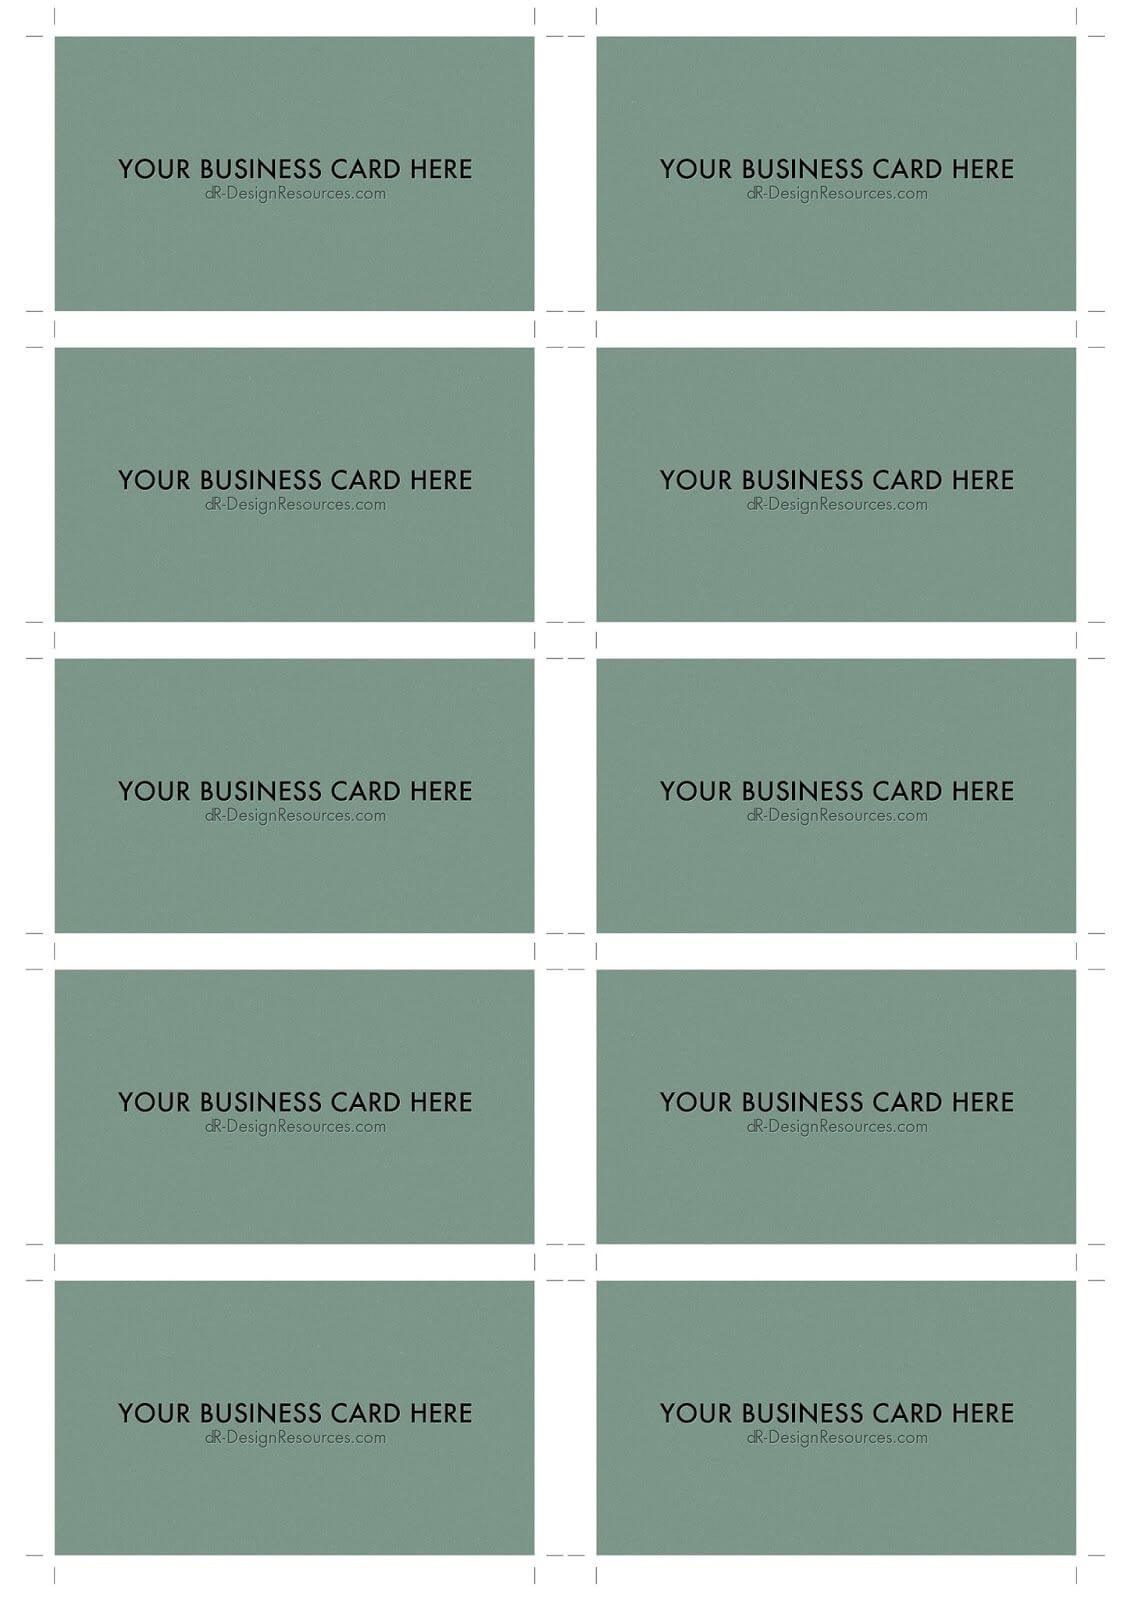 A4 Business Card Template Psd (10 Per Sheet) | Business Card With Regard To Staples Business Card Template Word